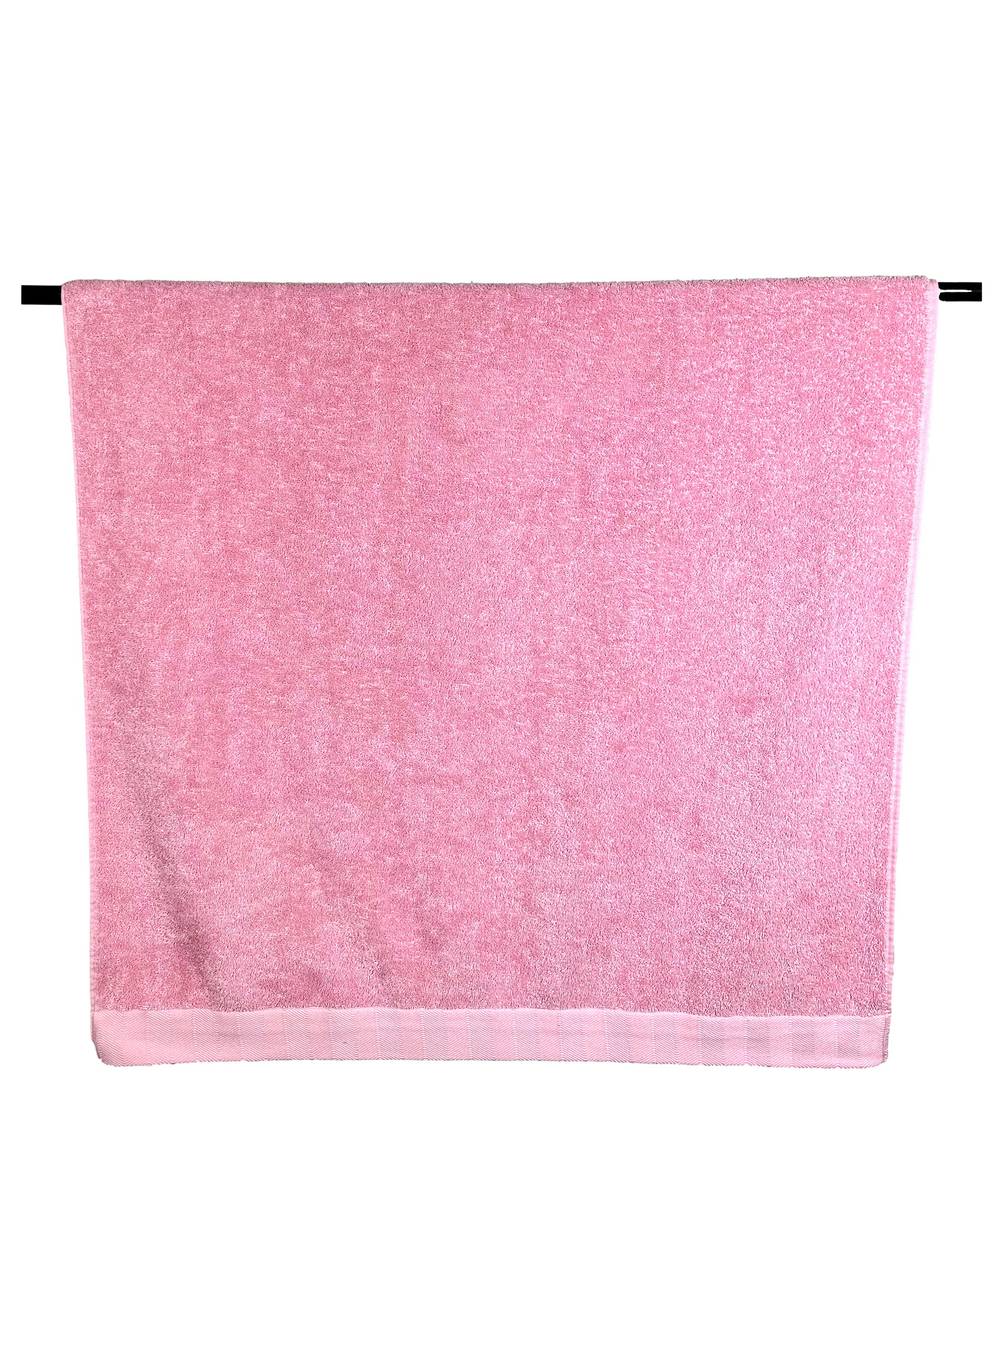 Attimo toalla de baño 70 x 140 cm 500 g rose gold